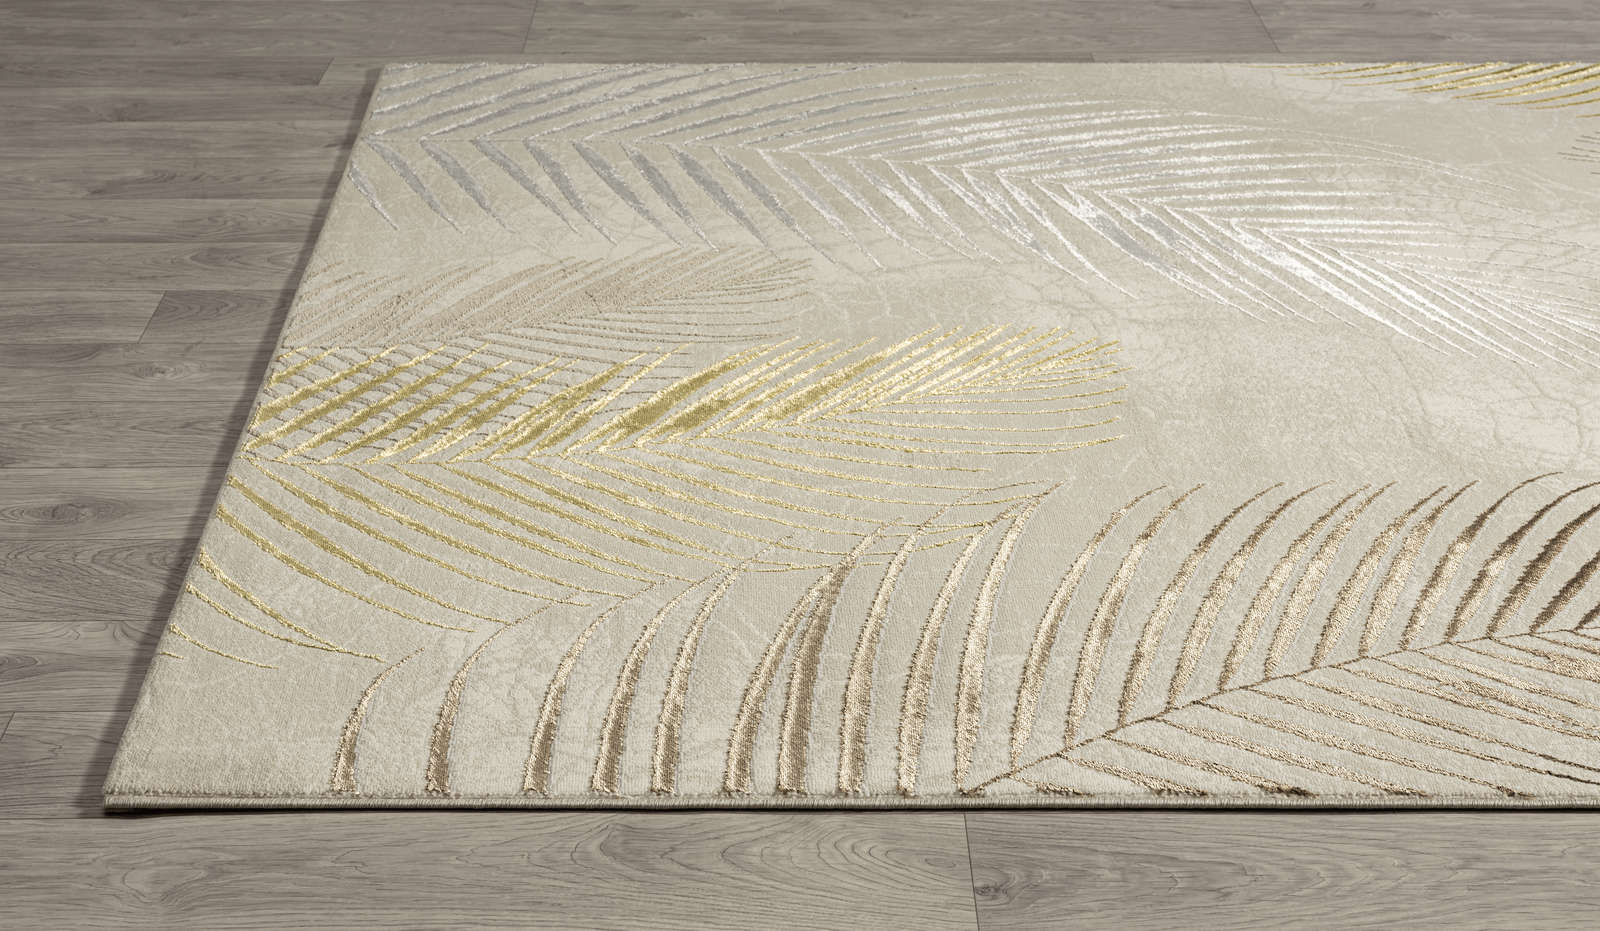             zacht crèmekleurig hoogpolig tapijt - 290 x 200 cm
        